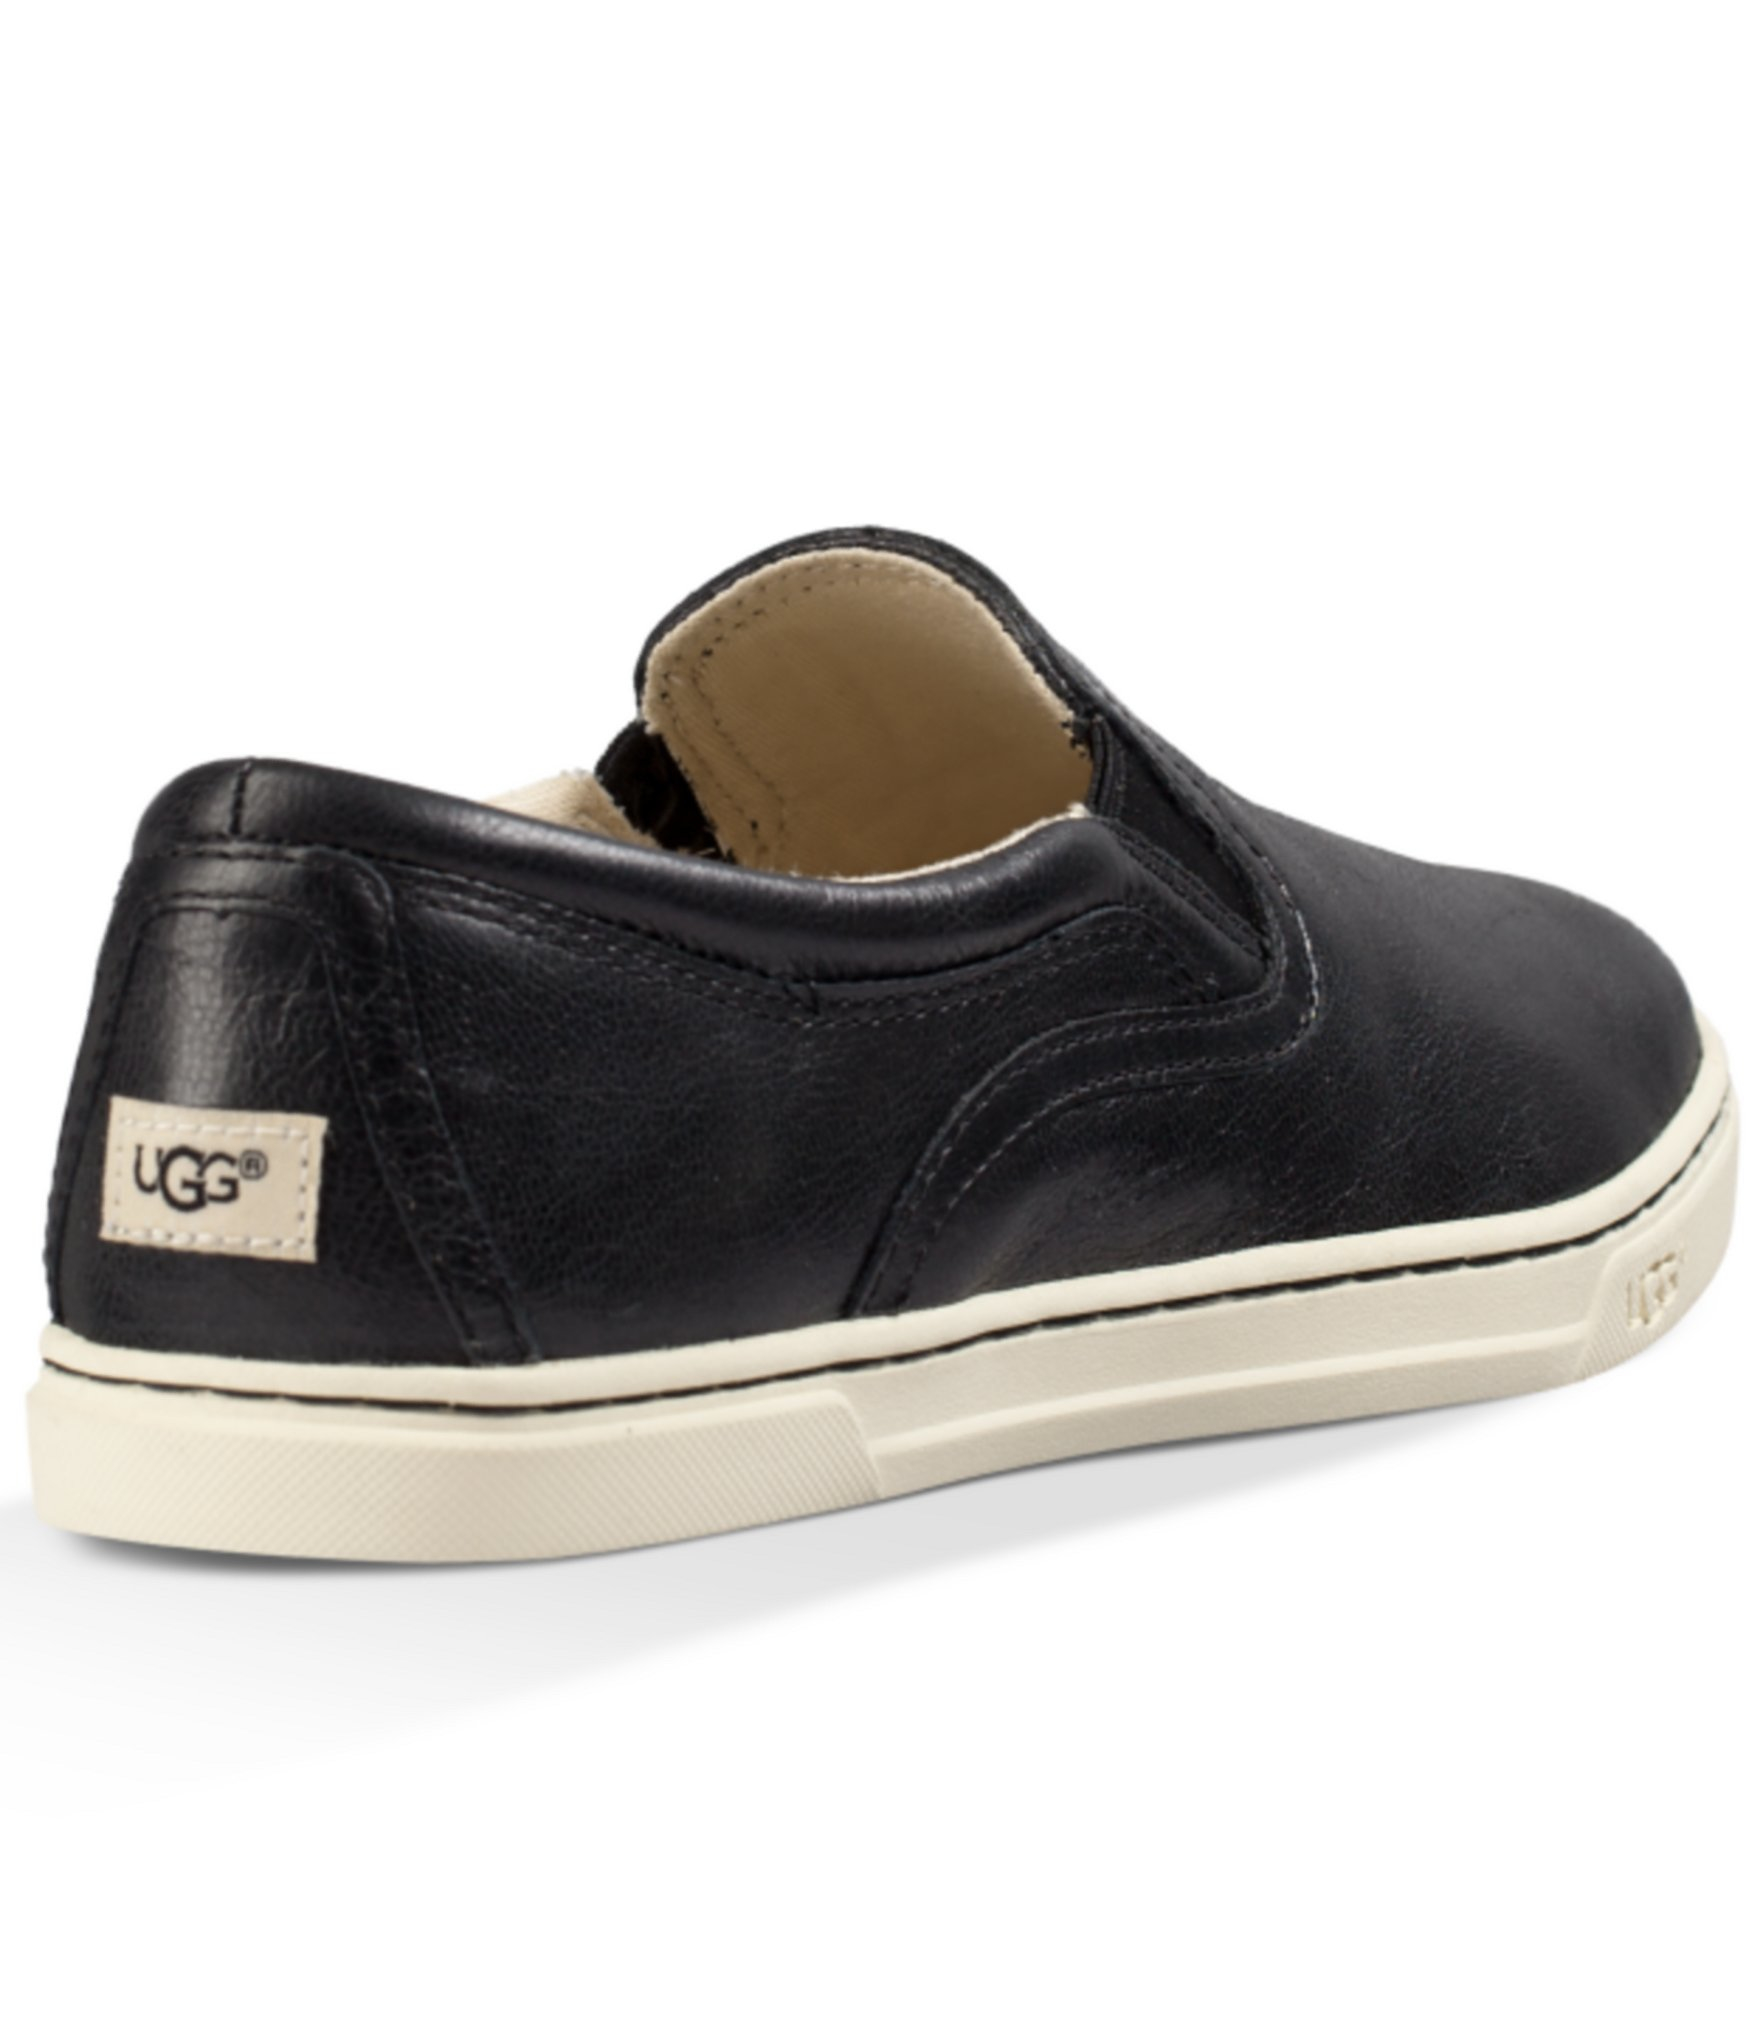 UGG ® Fierce Leather Sneakers in Black - Lyst